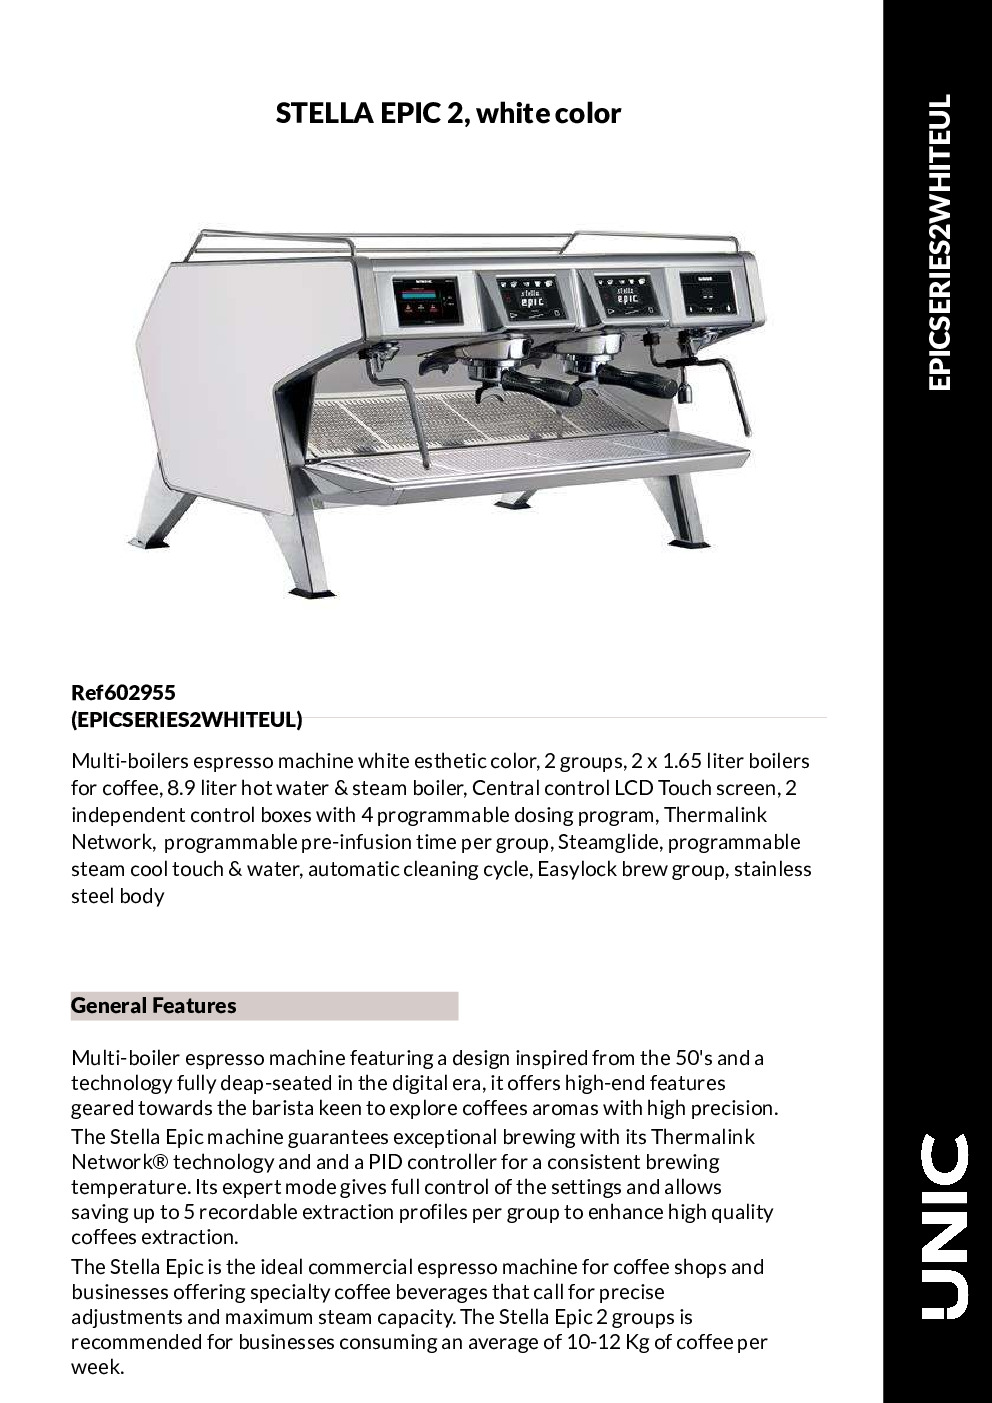 Grindmaster-UNIC-Crathco EPIC 2 WHITE Espresso Cappuccino Machine